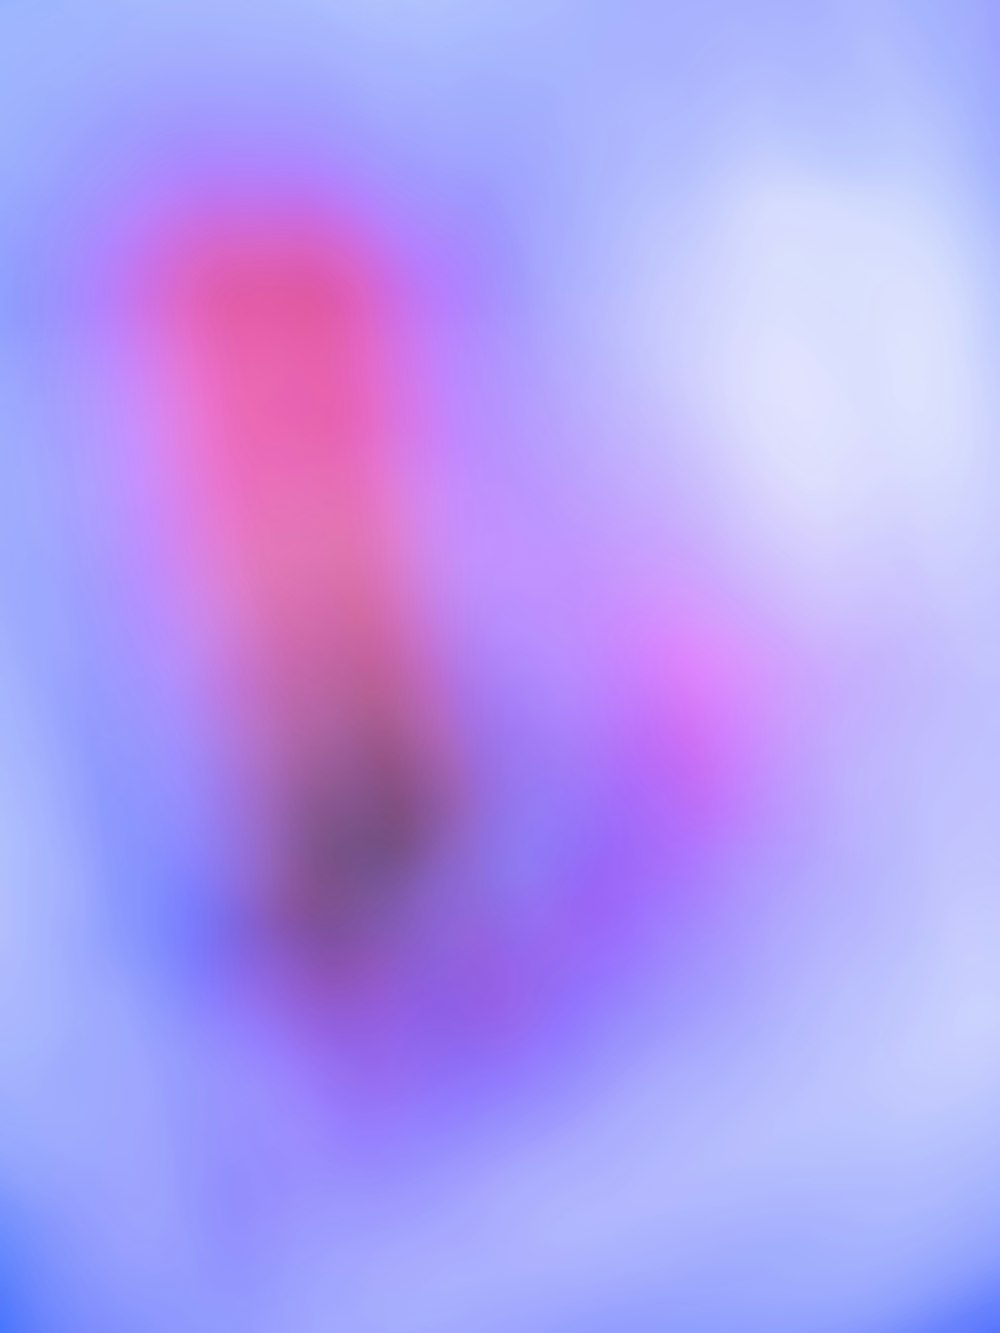 une image floue d’un arrière-plan rose et bleu